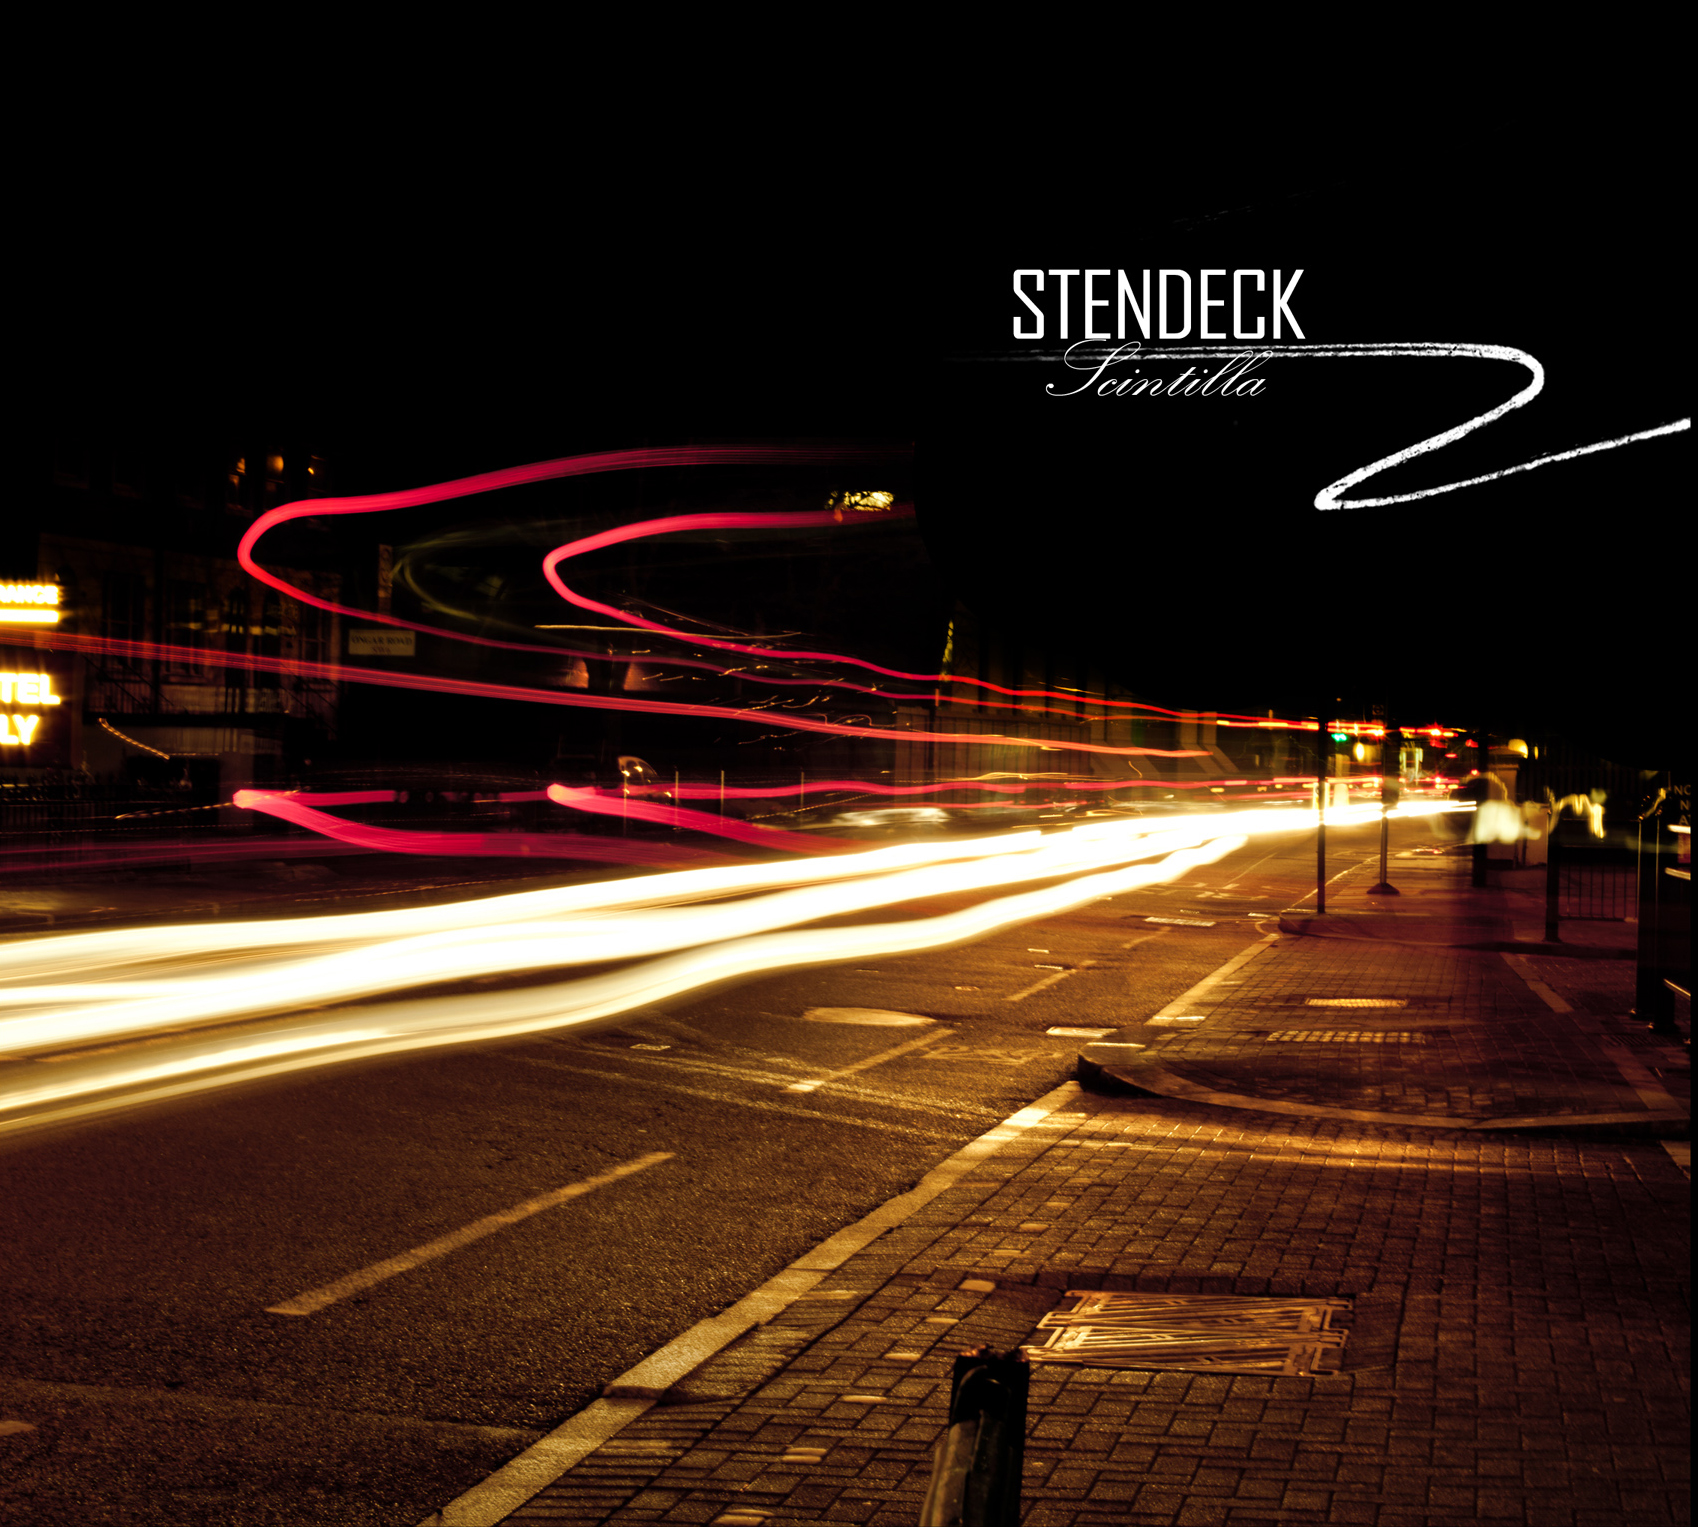 Stendeck - Scintilla / CD